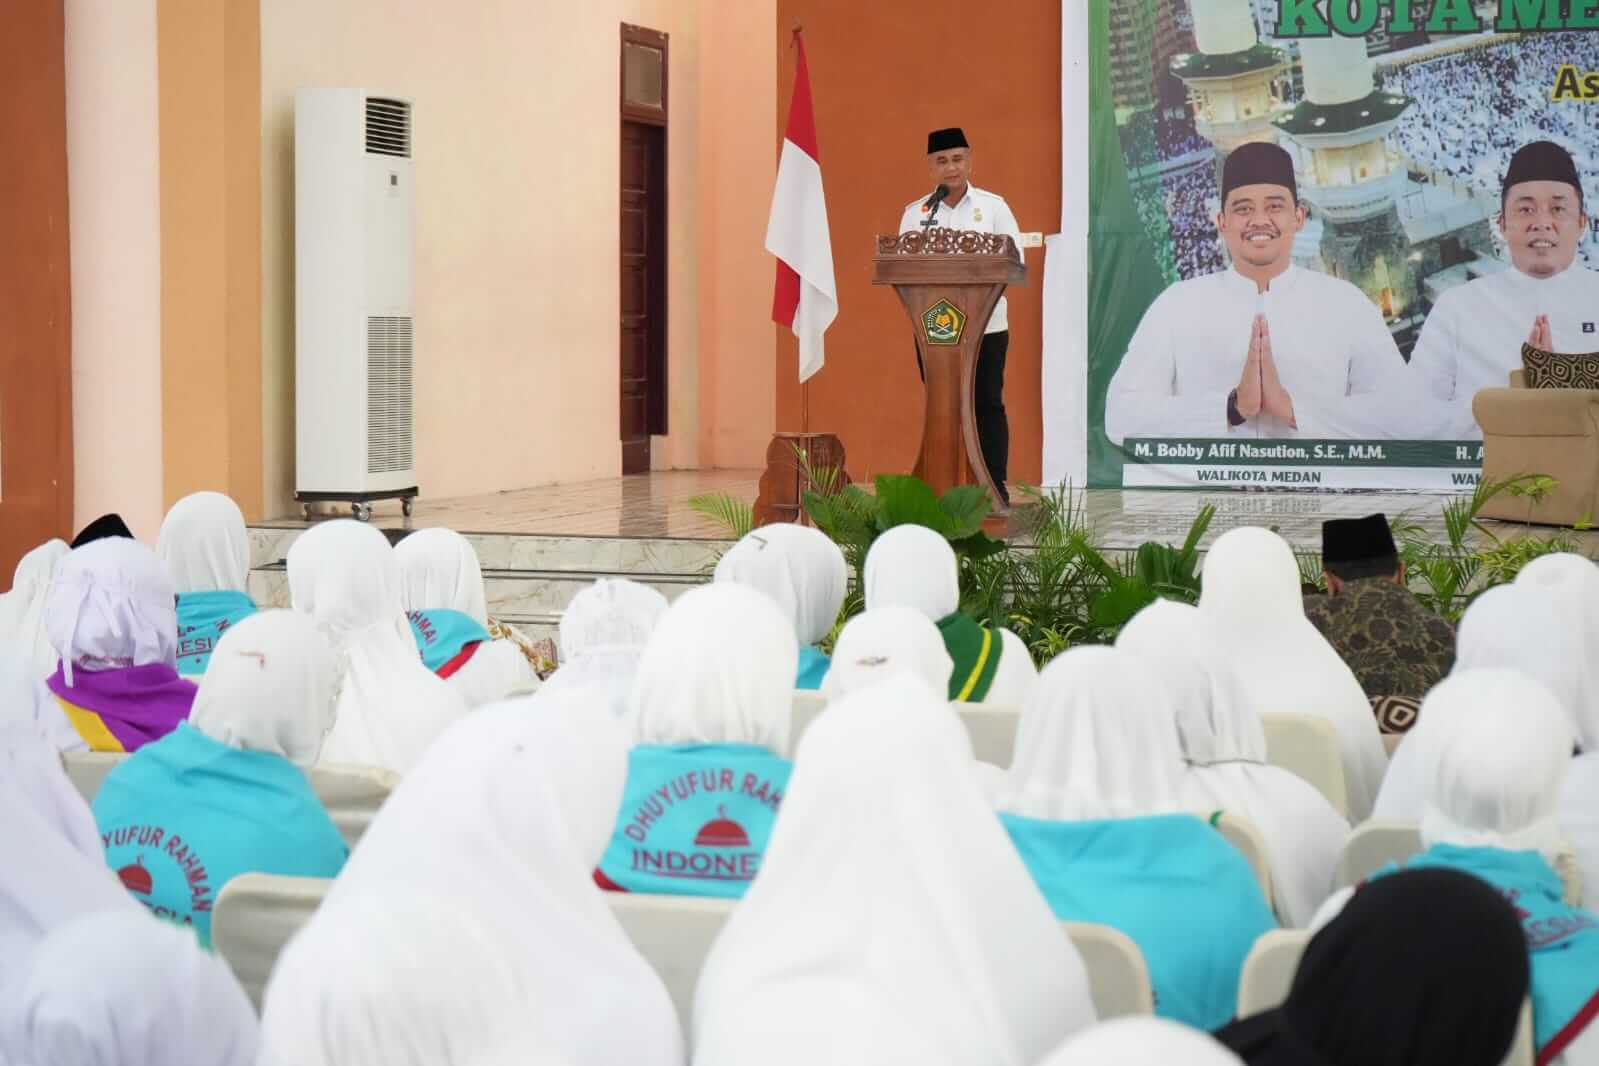 Buka Bimbingan Manasik Haji Akbar, Wali Kota Medan Berpesan Kepada Jamaah Untuk mengikutinya Dengan Sungguh-Sungguh